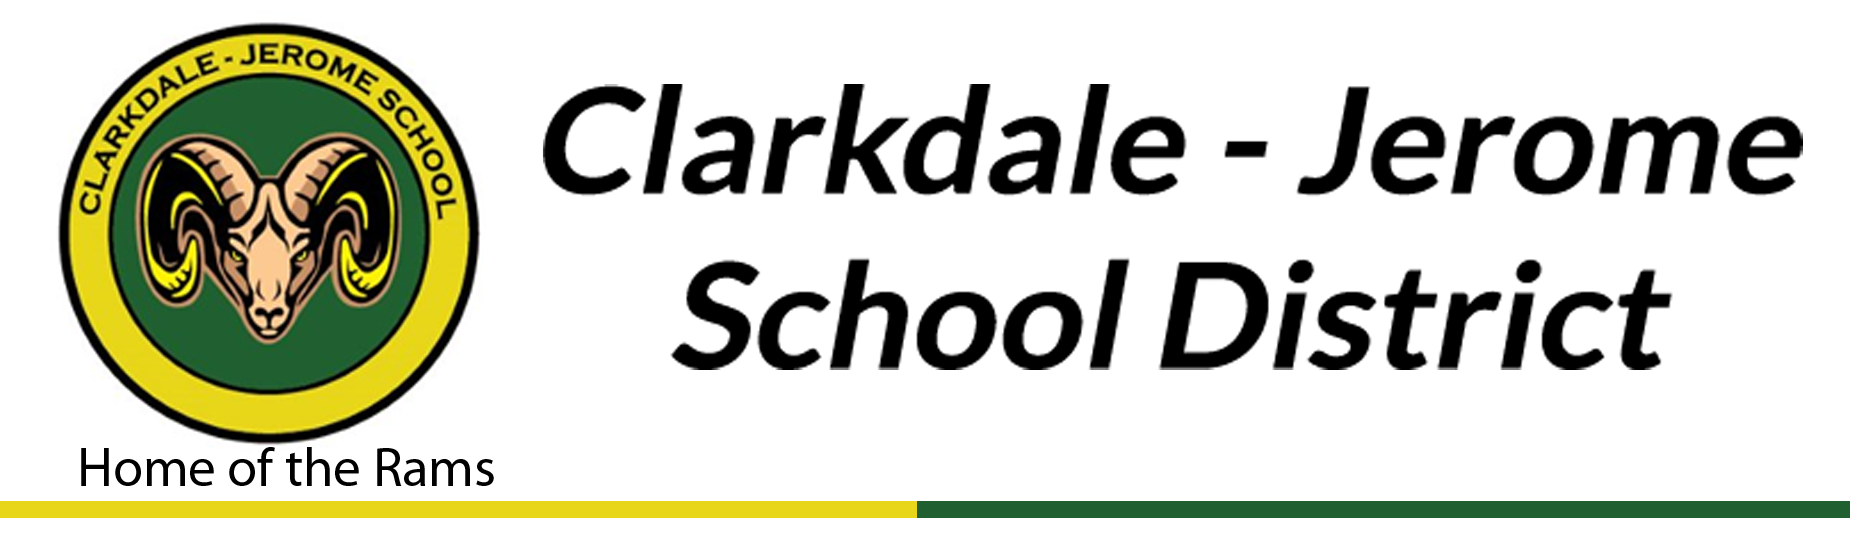 Clarkdale Jerome School